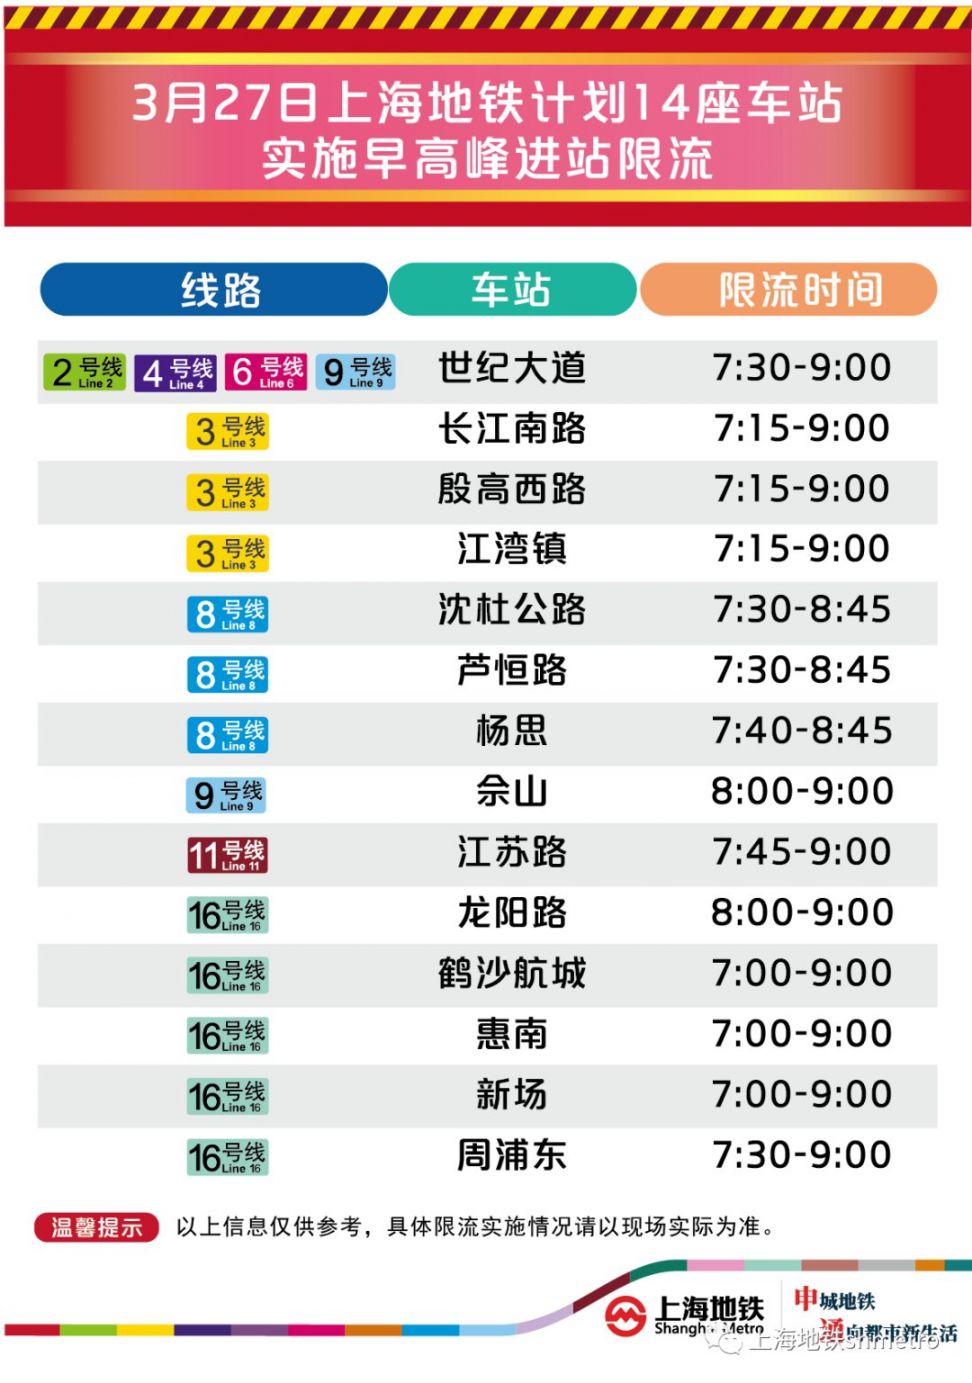 3月27日 上海14座地铁站早高峰限流